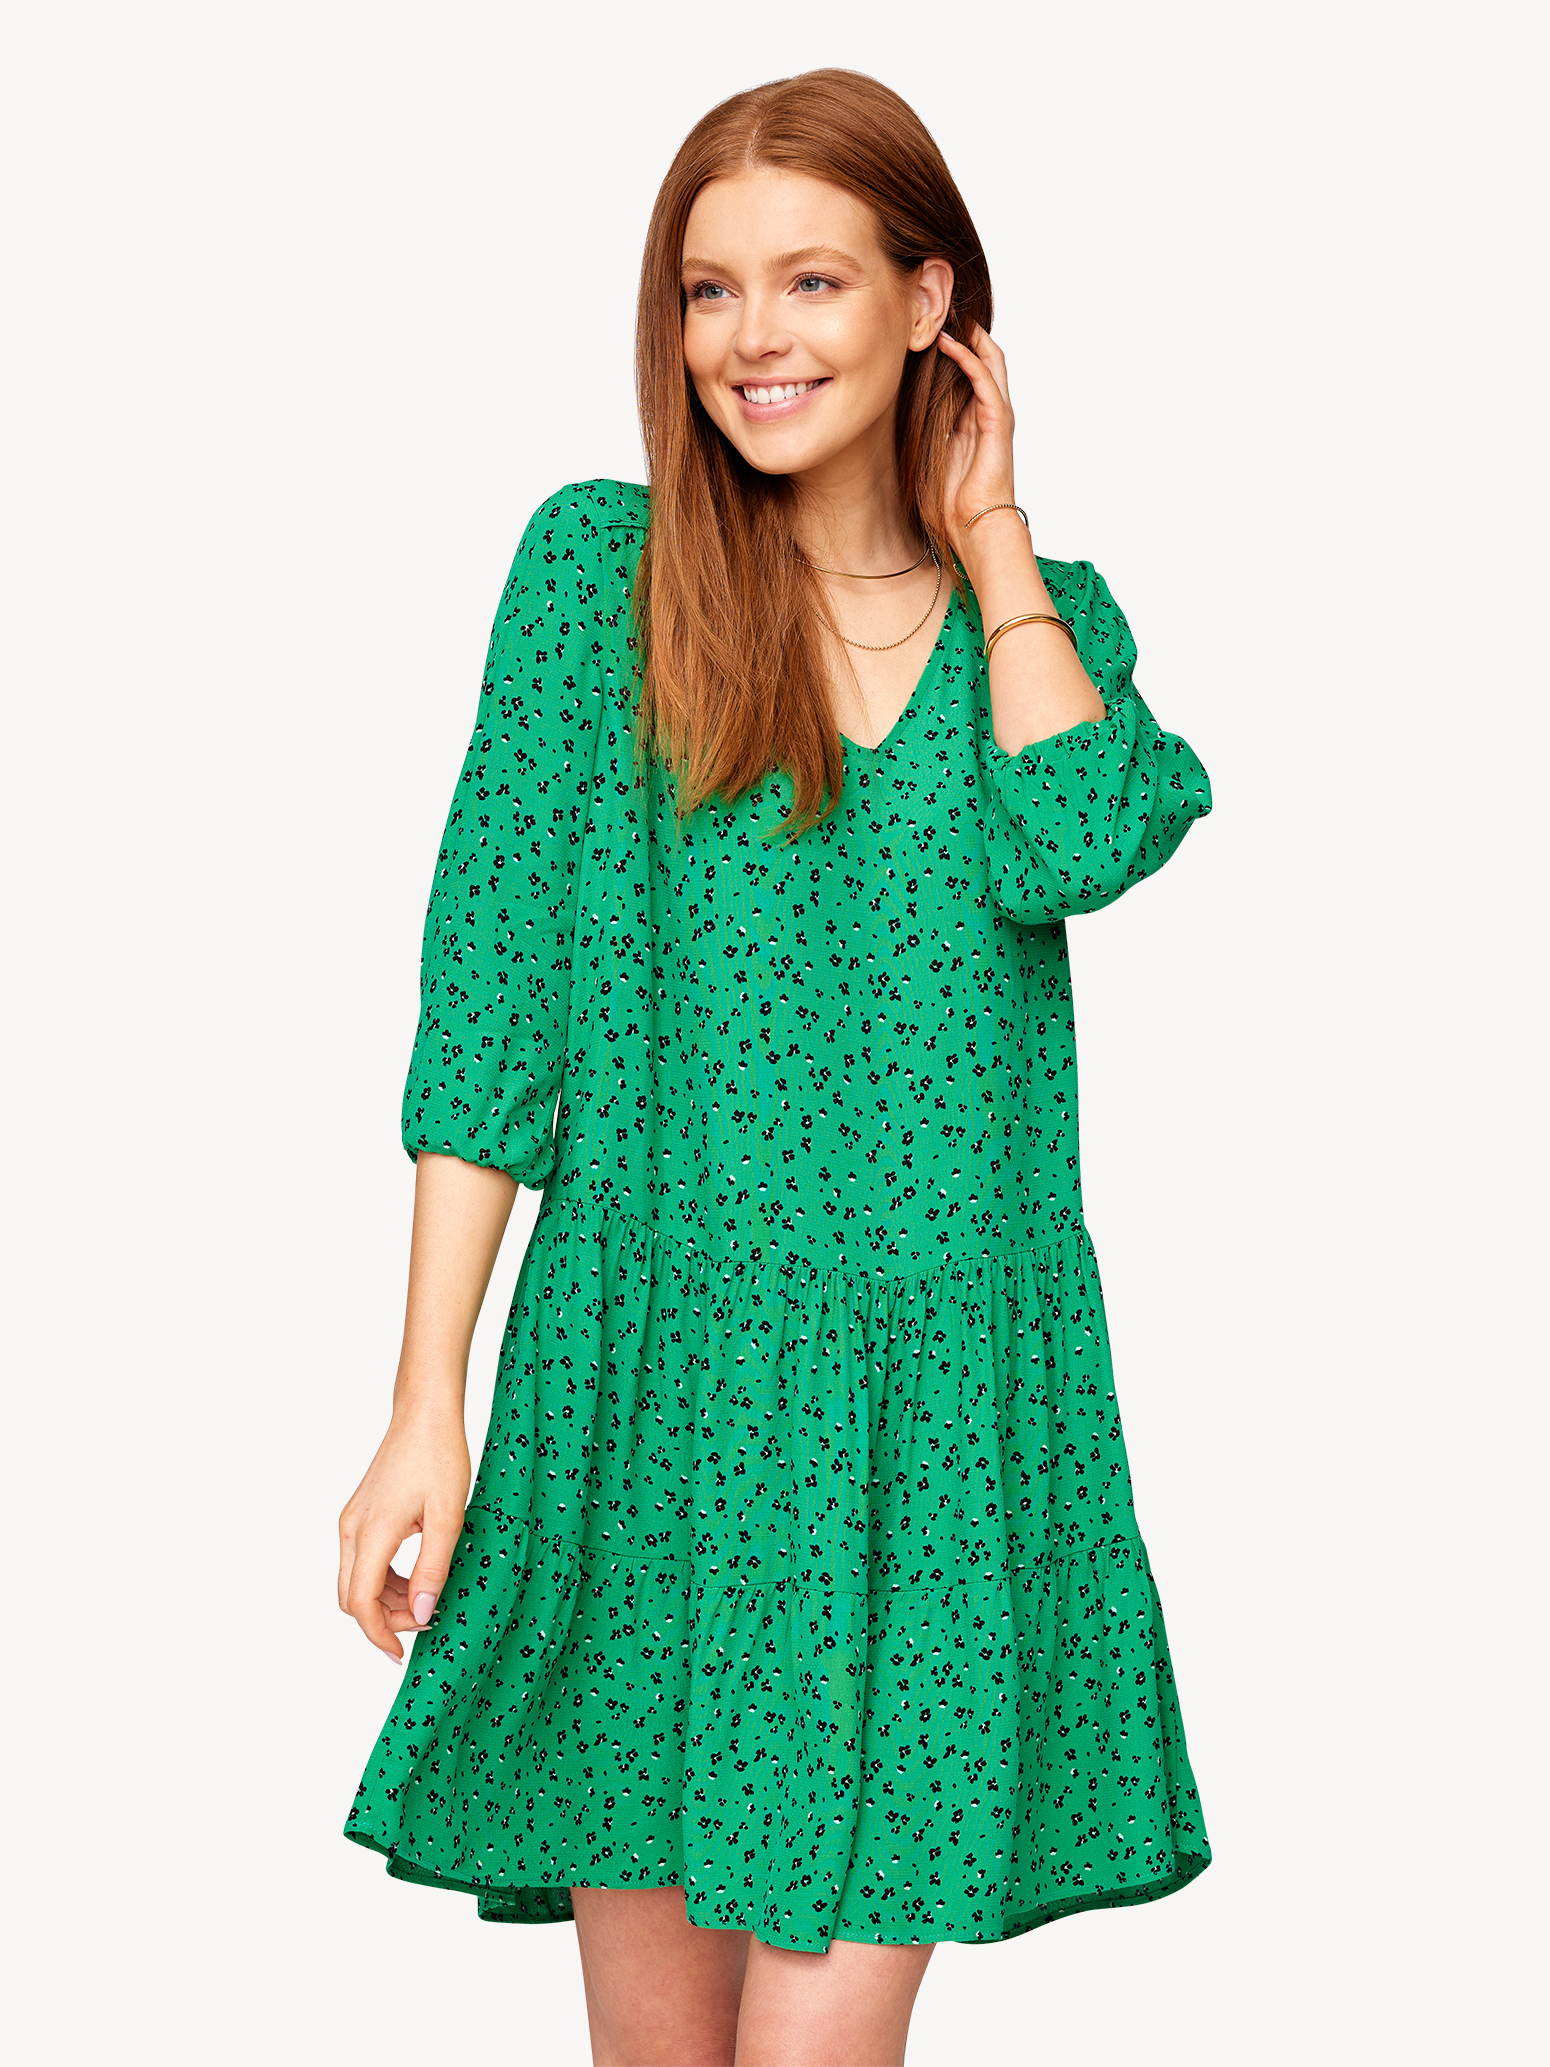 Kleid - grün TAW0154-63059: Tamaris Kleider online kaufen!